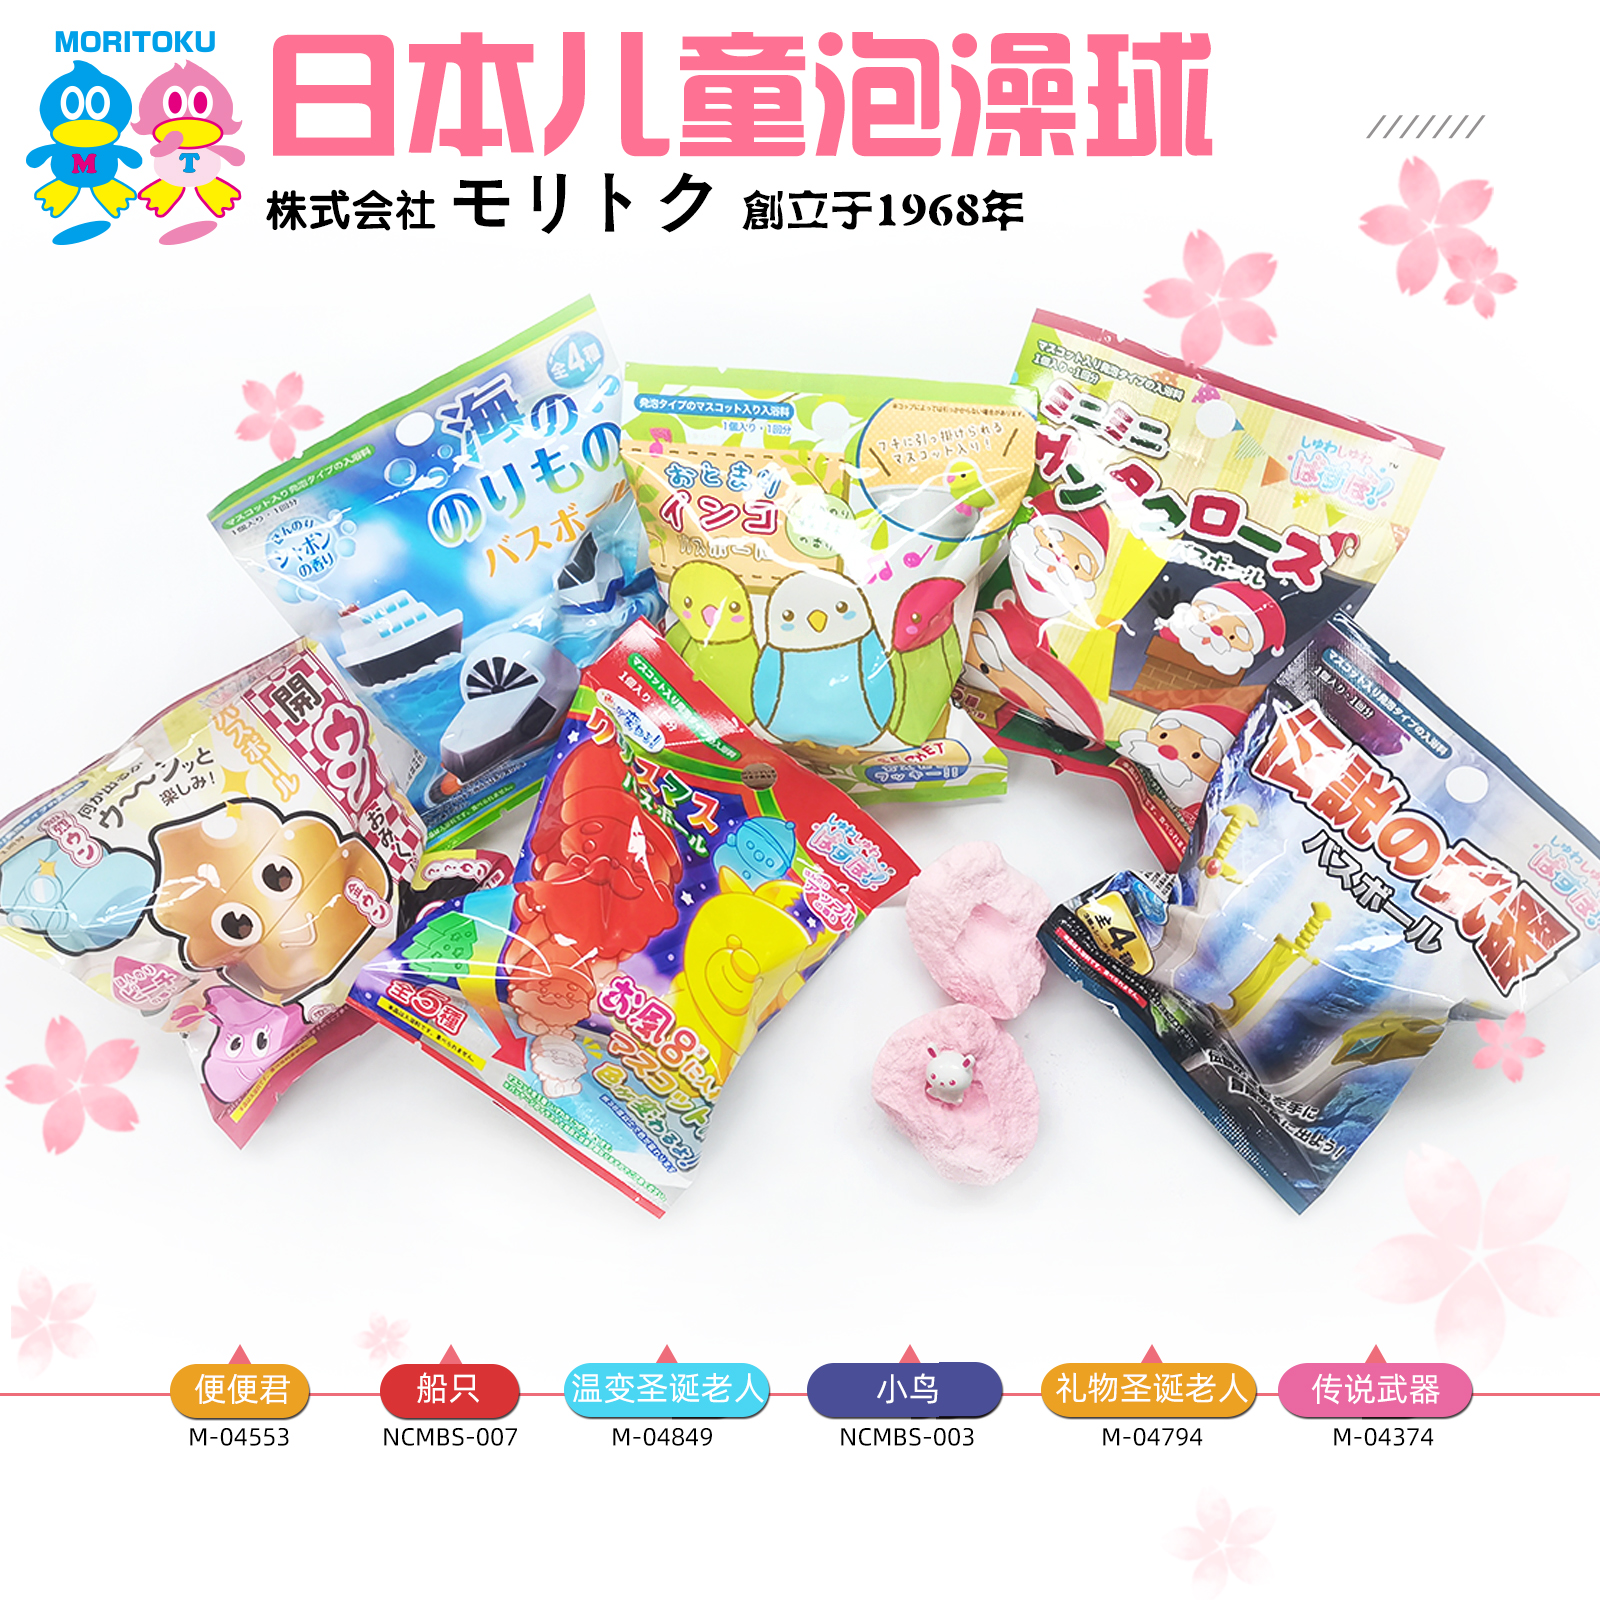 日本进口MORITOKU宝宝浴盐盲盒乐趣随机小玩具泡澡用可爱卡通图案